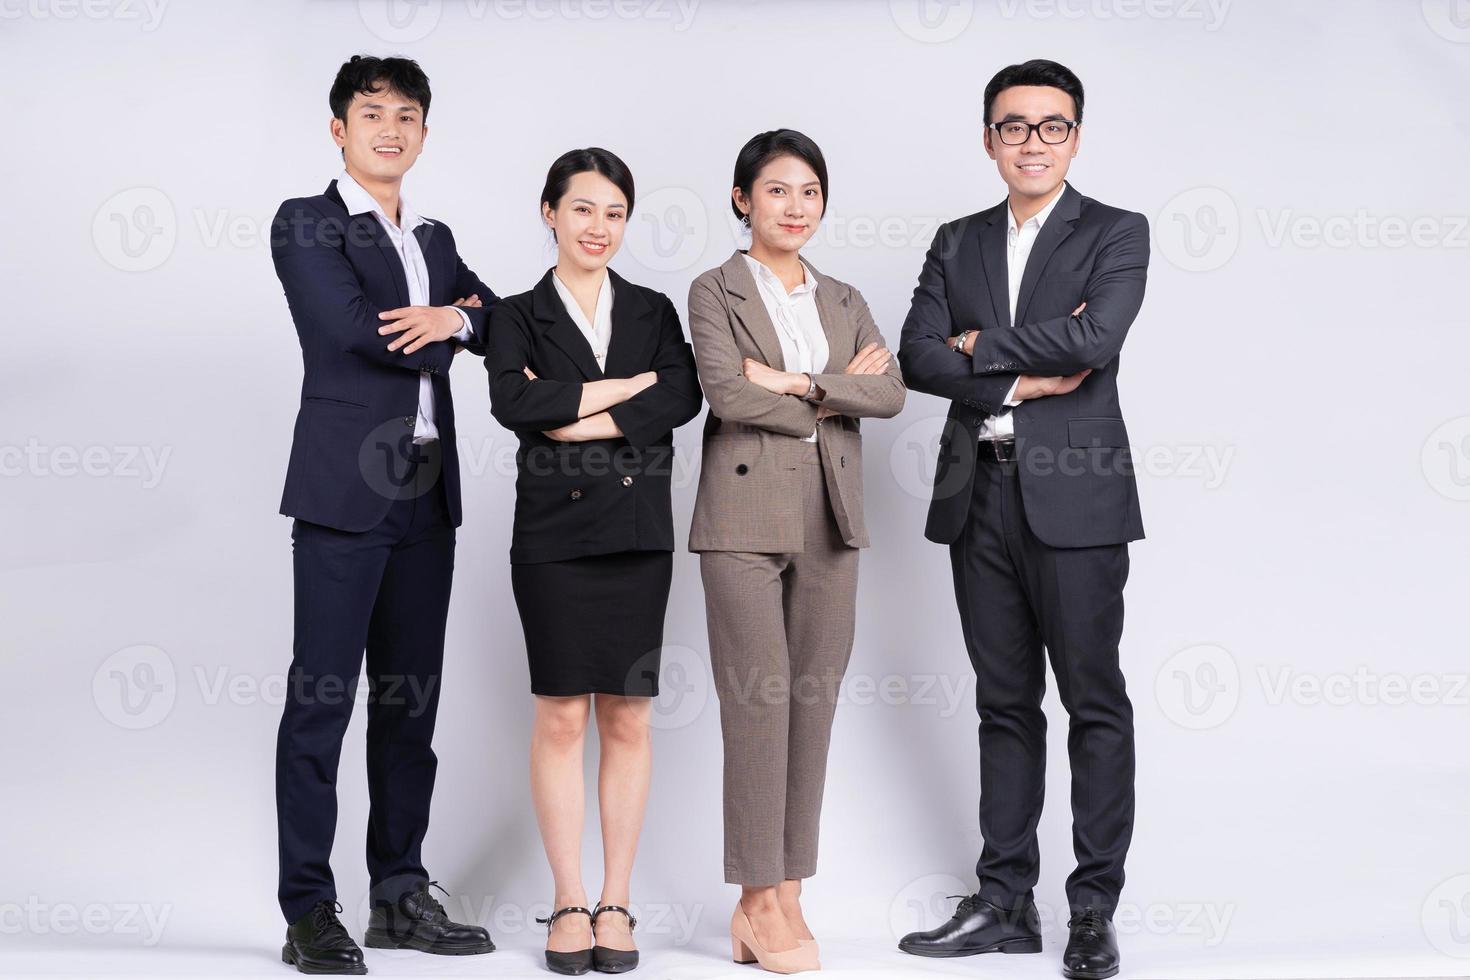 groep Aziatische zakenmensen die zich voordeed op een witte achtergrond foto